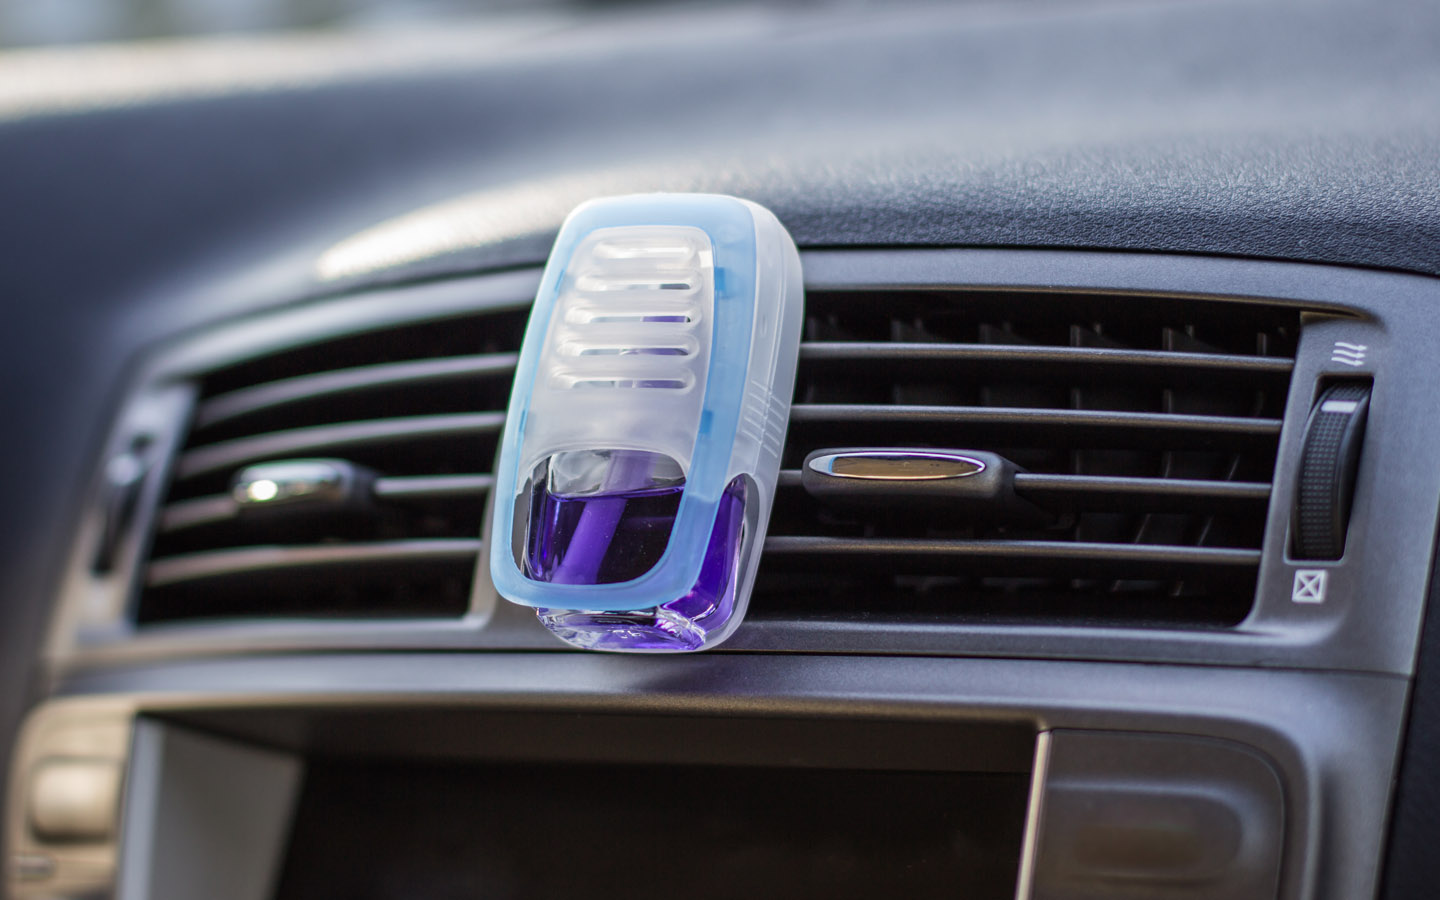 используйте освежители воздуха в машине, если хотите узнать, как избавиться от запаха сигарет в машине